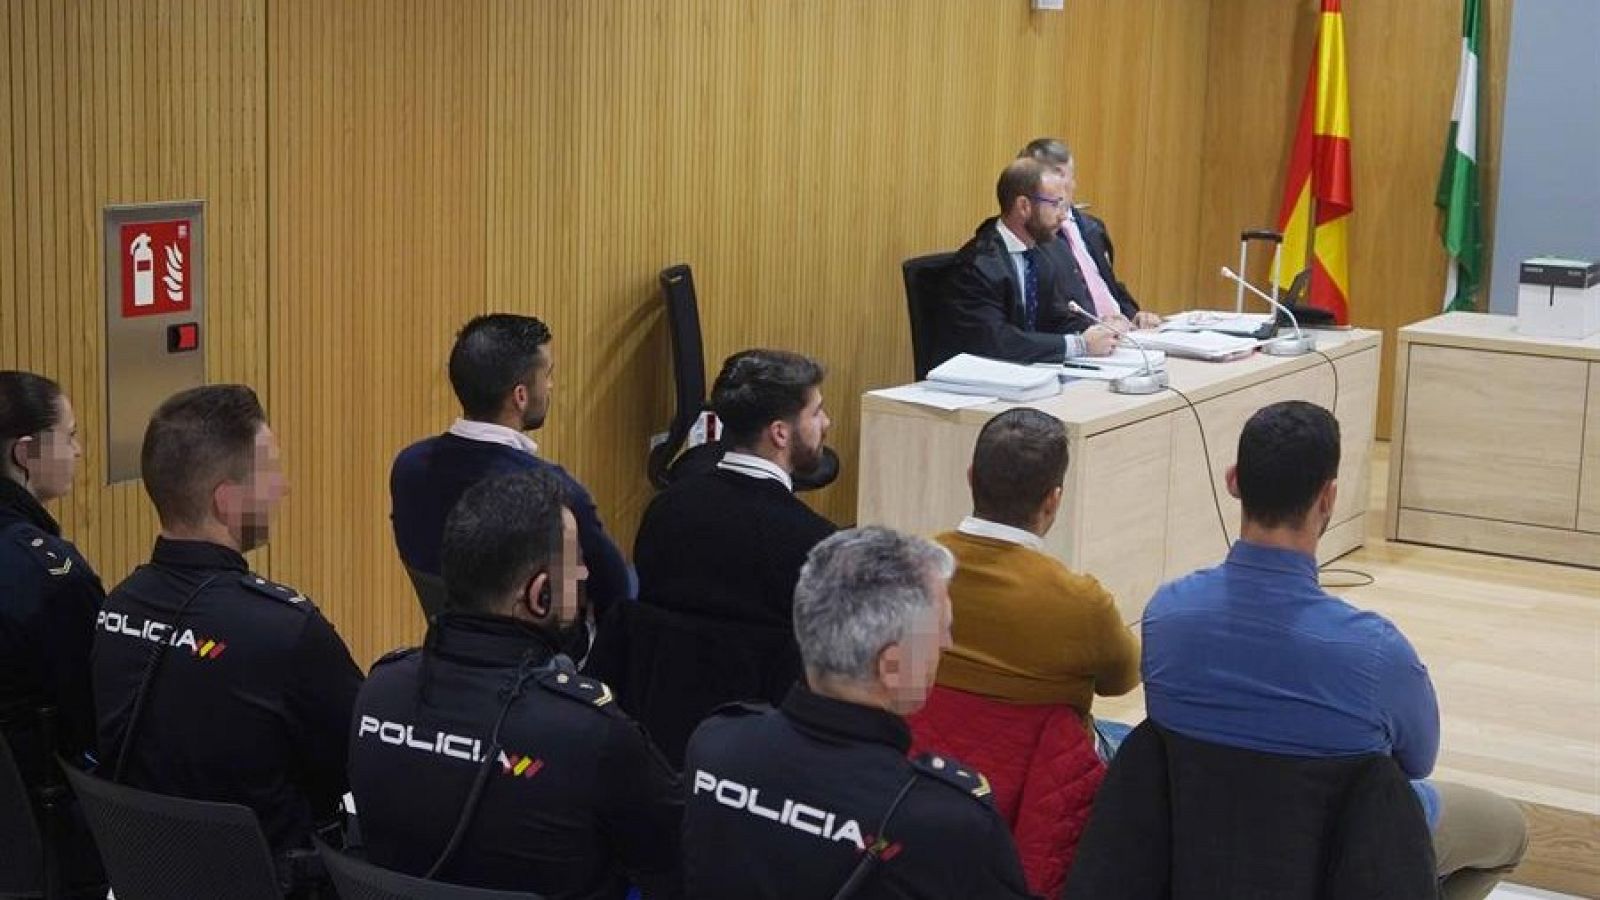 Condenan a 18 meses de prisión a cuatro de los miembros de 'La Manada' por abusos sexuales a una joven de Pozoblanco - RTVE.es